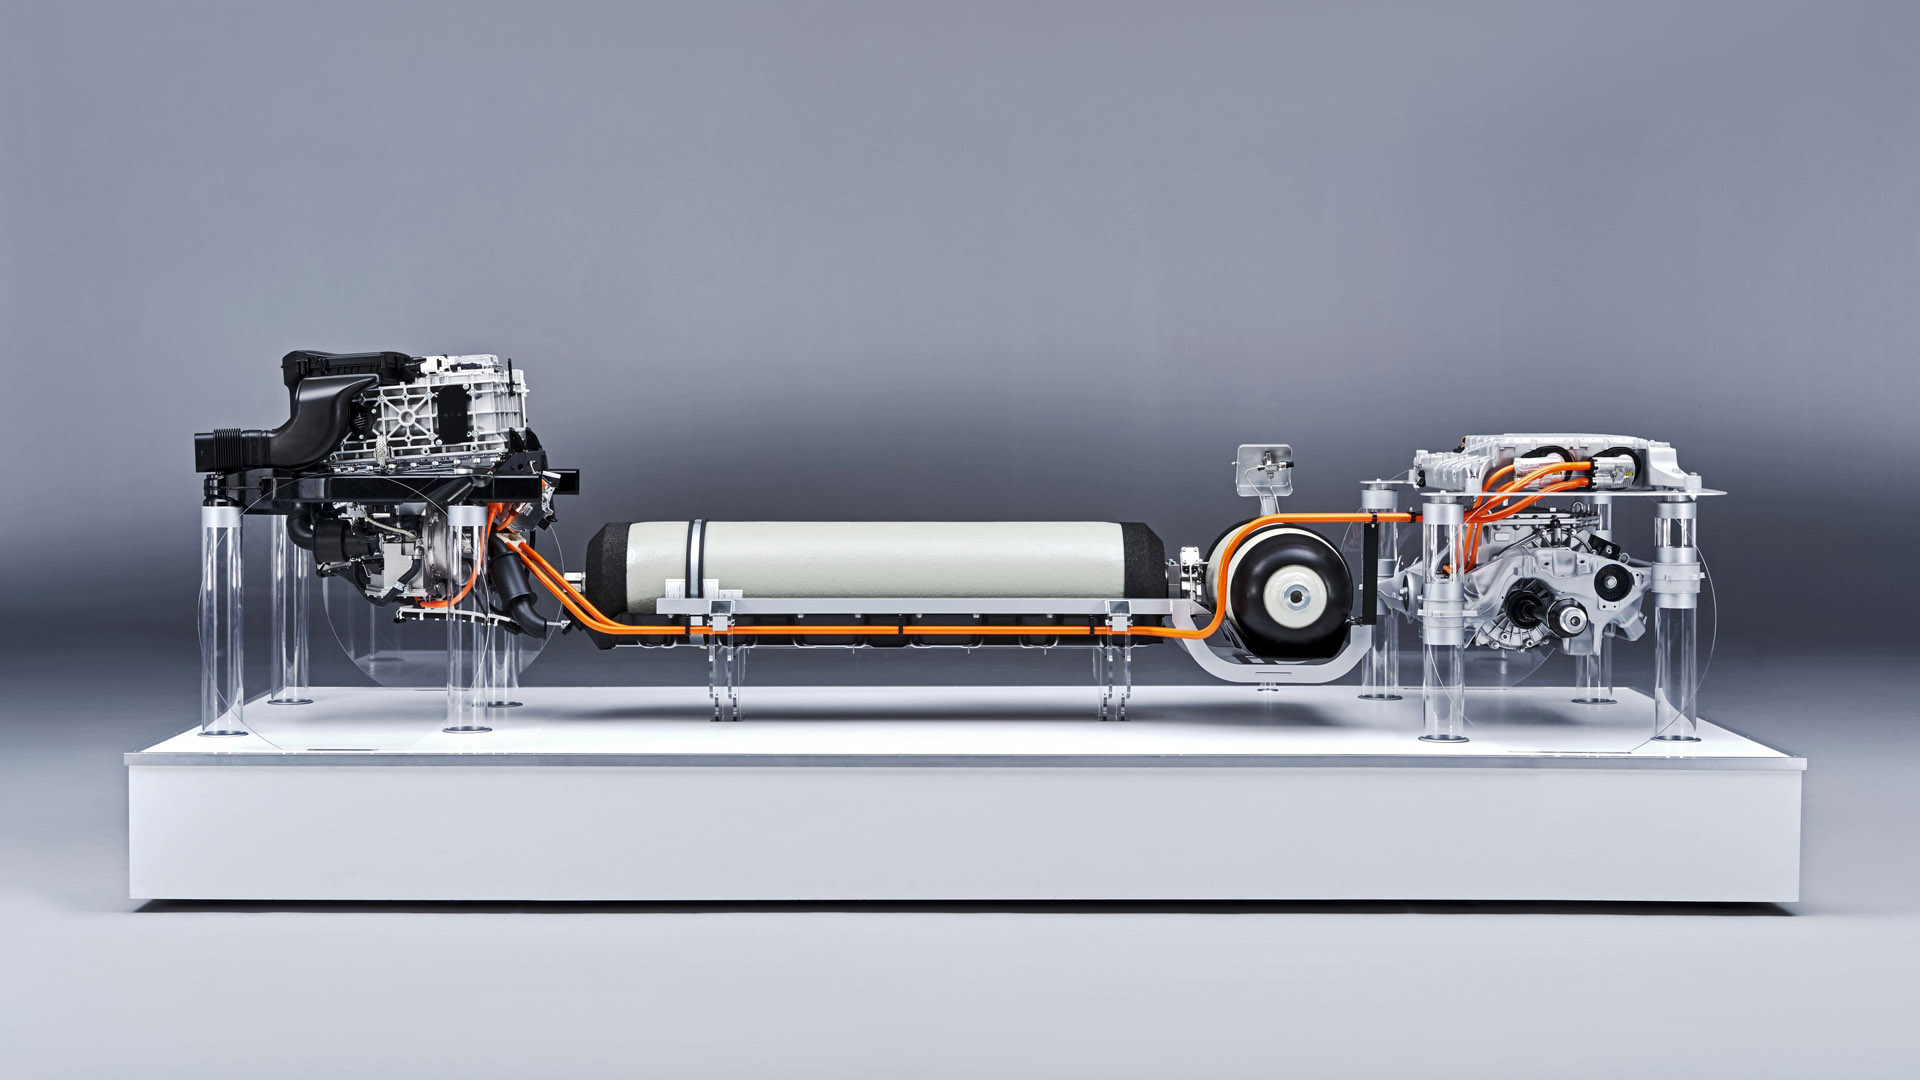 BMW hydrogen fuel cell powertrain side